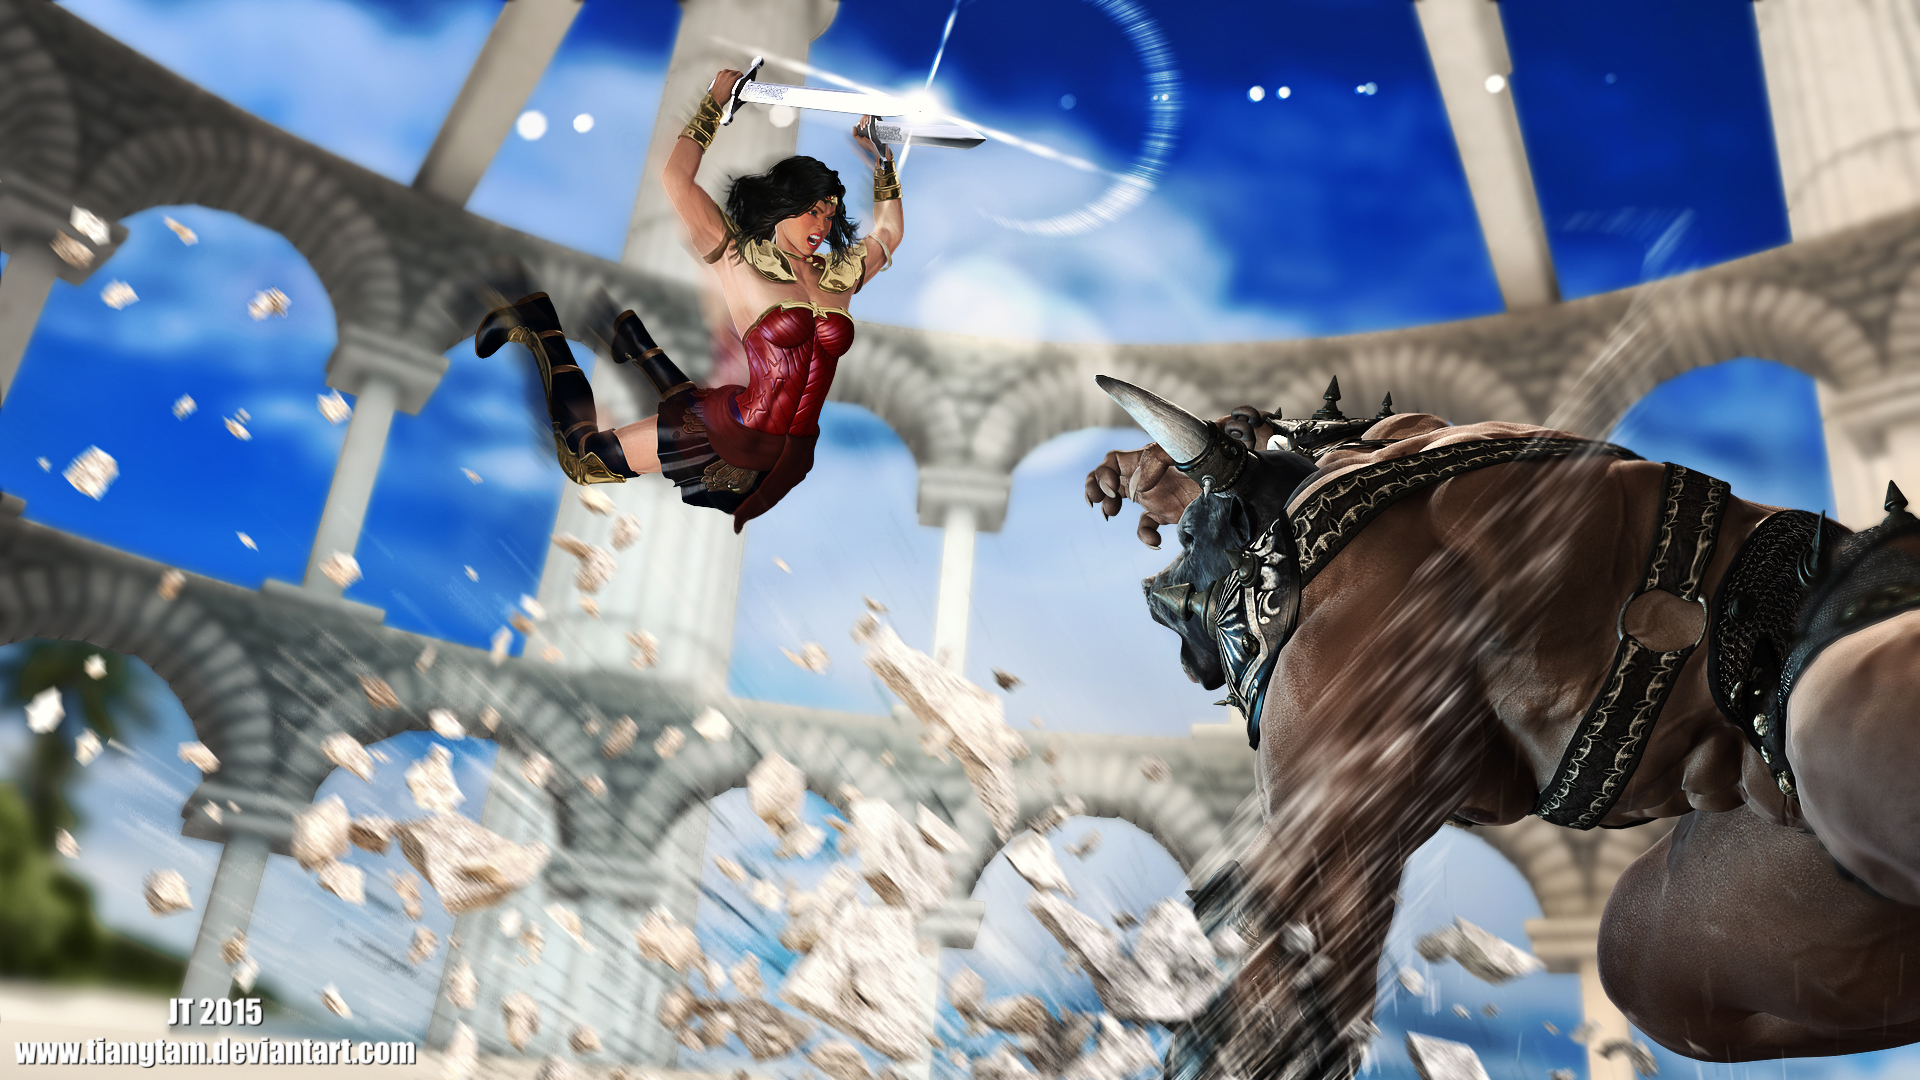 Wonder Woman v Minotaur